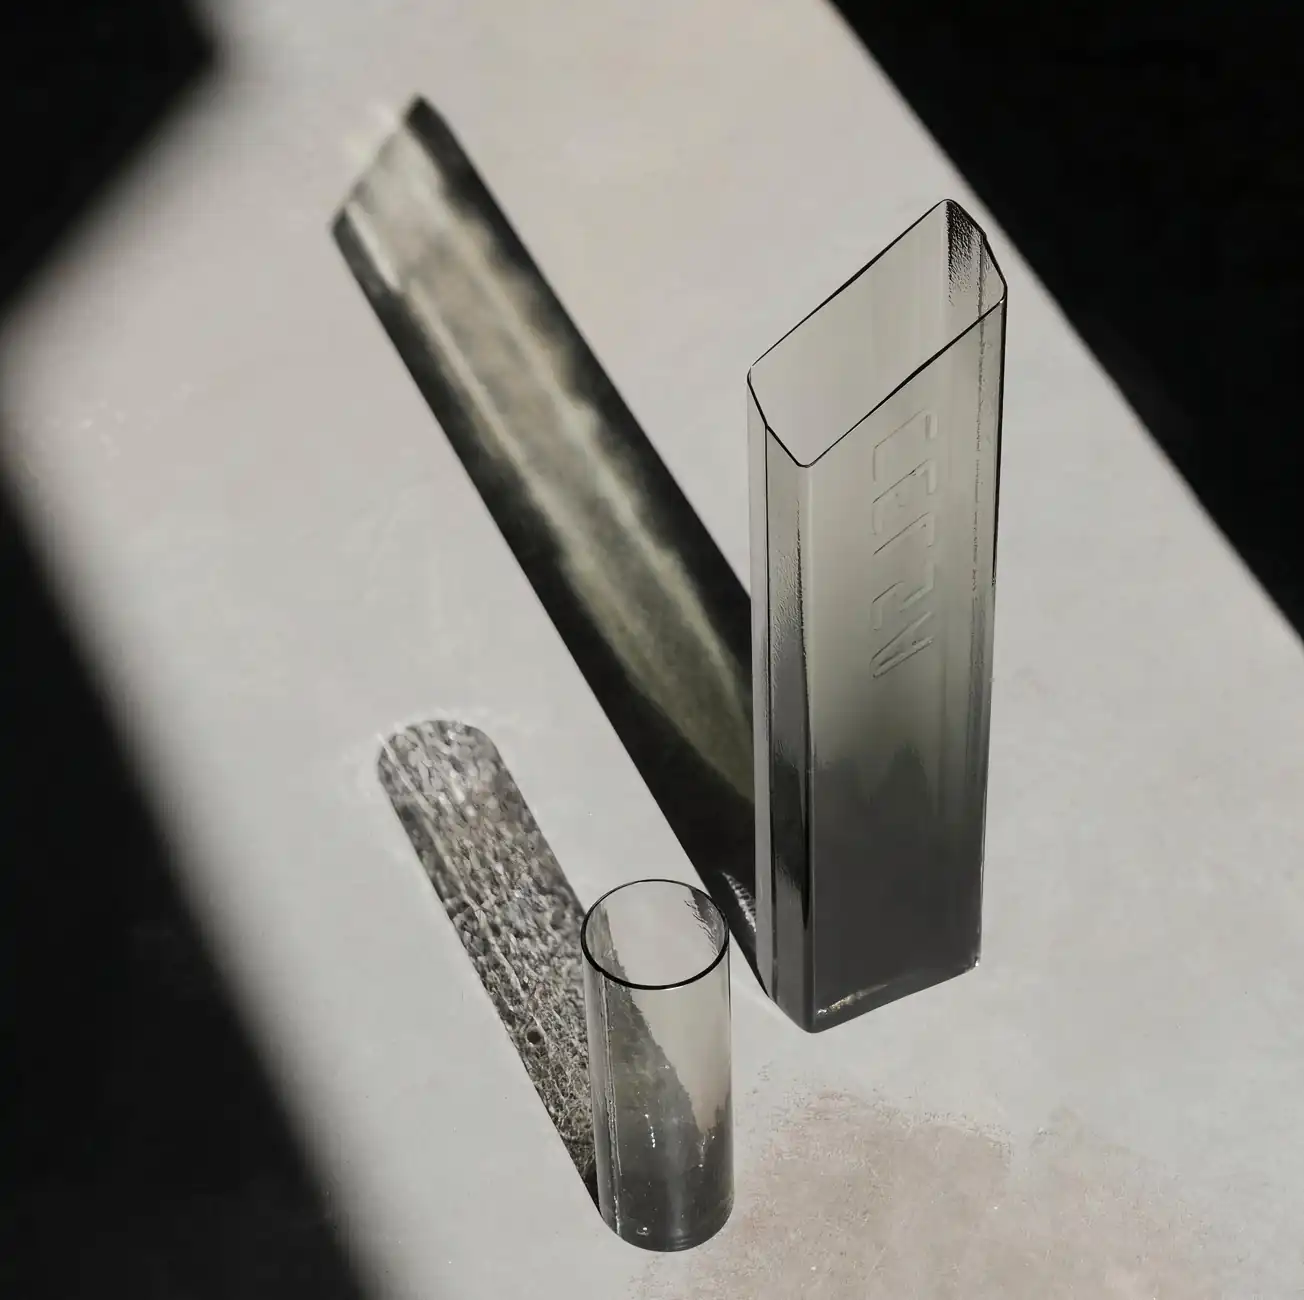 Photographie Instagram de Baptiste Meynile montrant 2 carafes en verre sous un rayon de soleil, mettant en valeur les caustiques produites par la lumière traversant les objets transluicides en verre soufflé